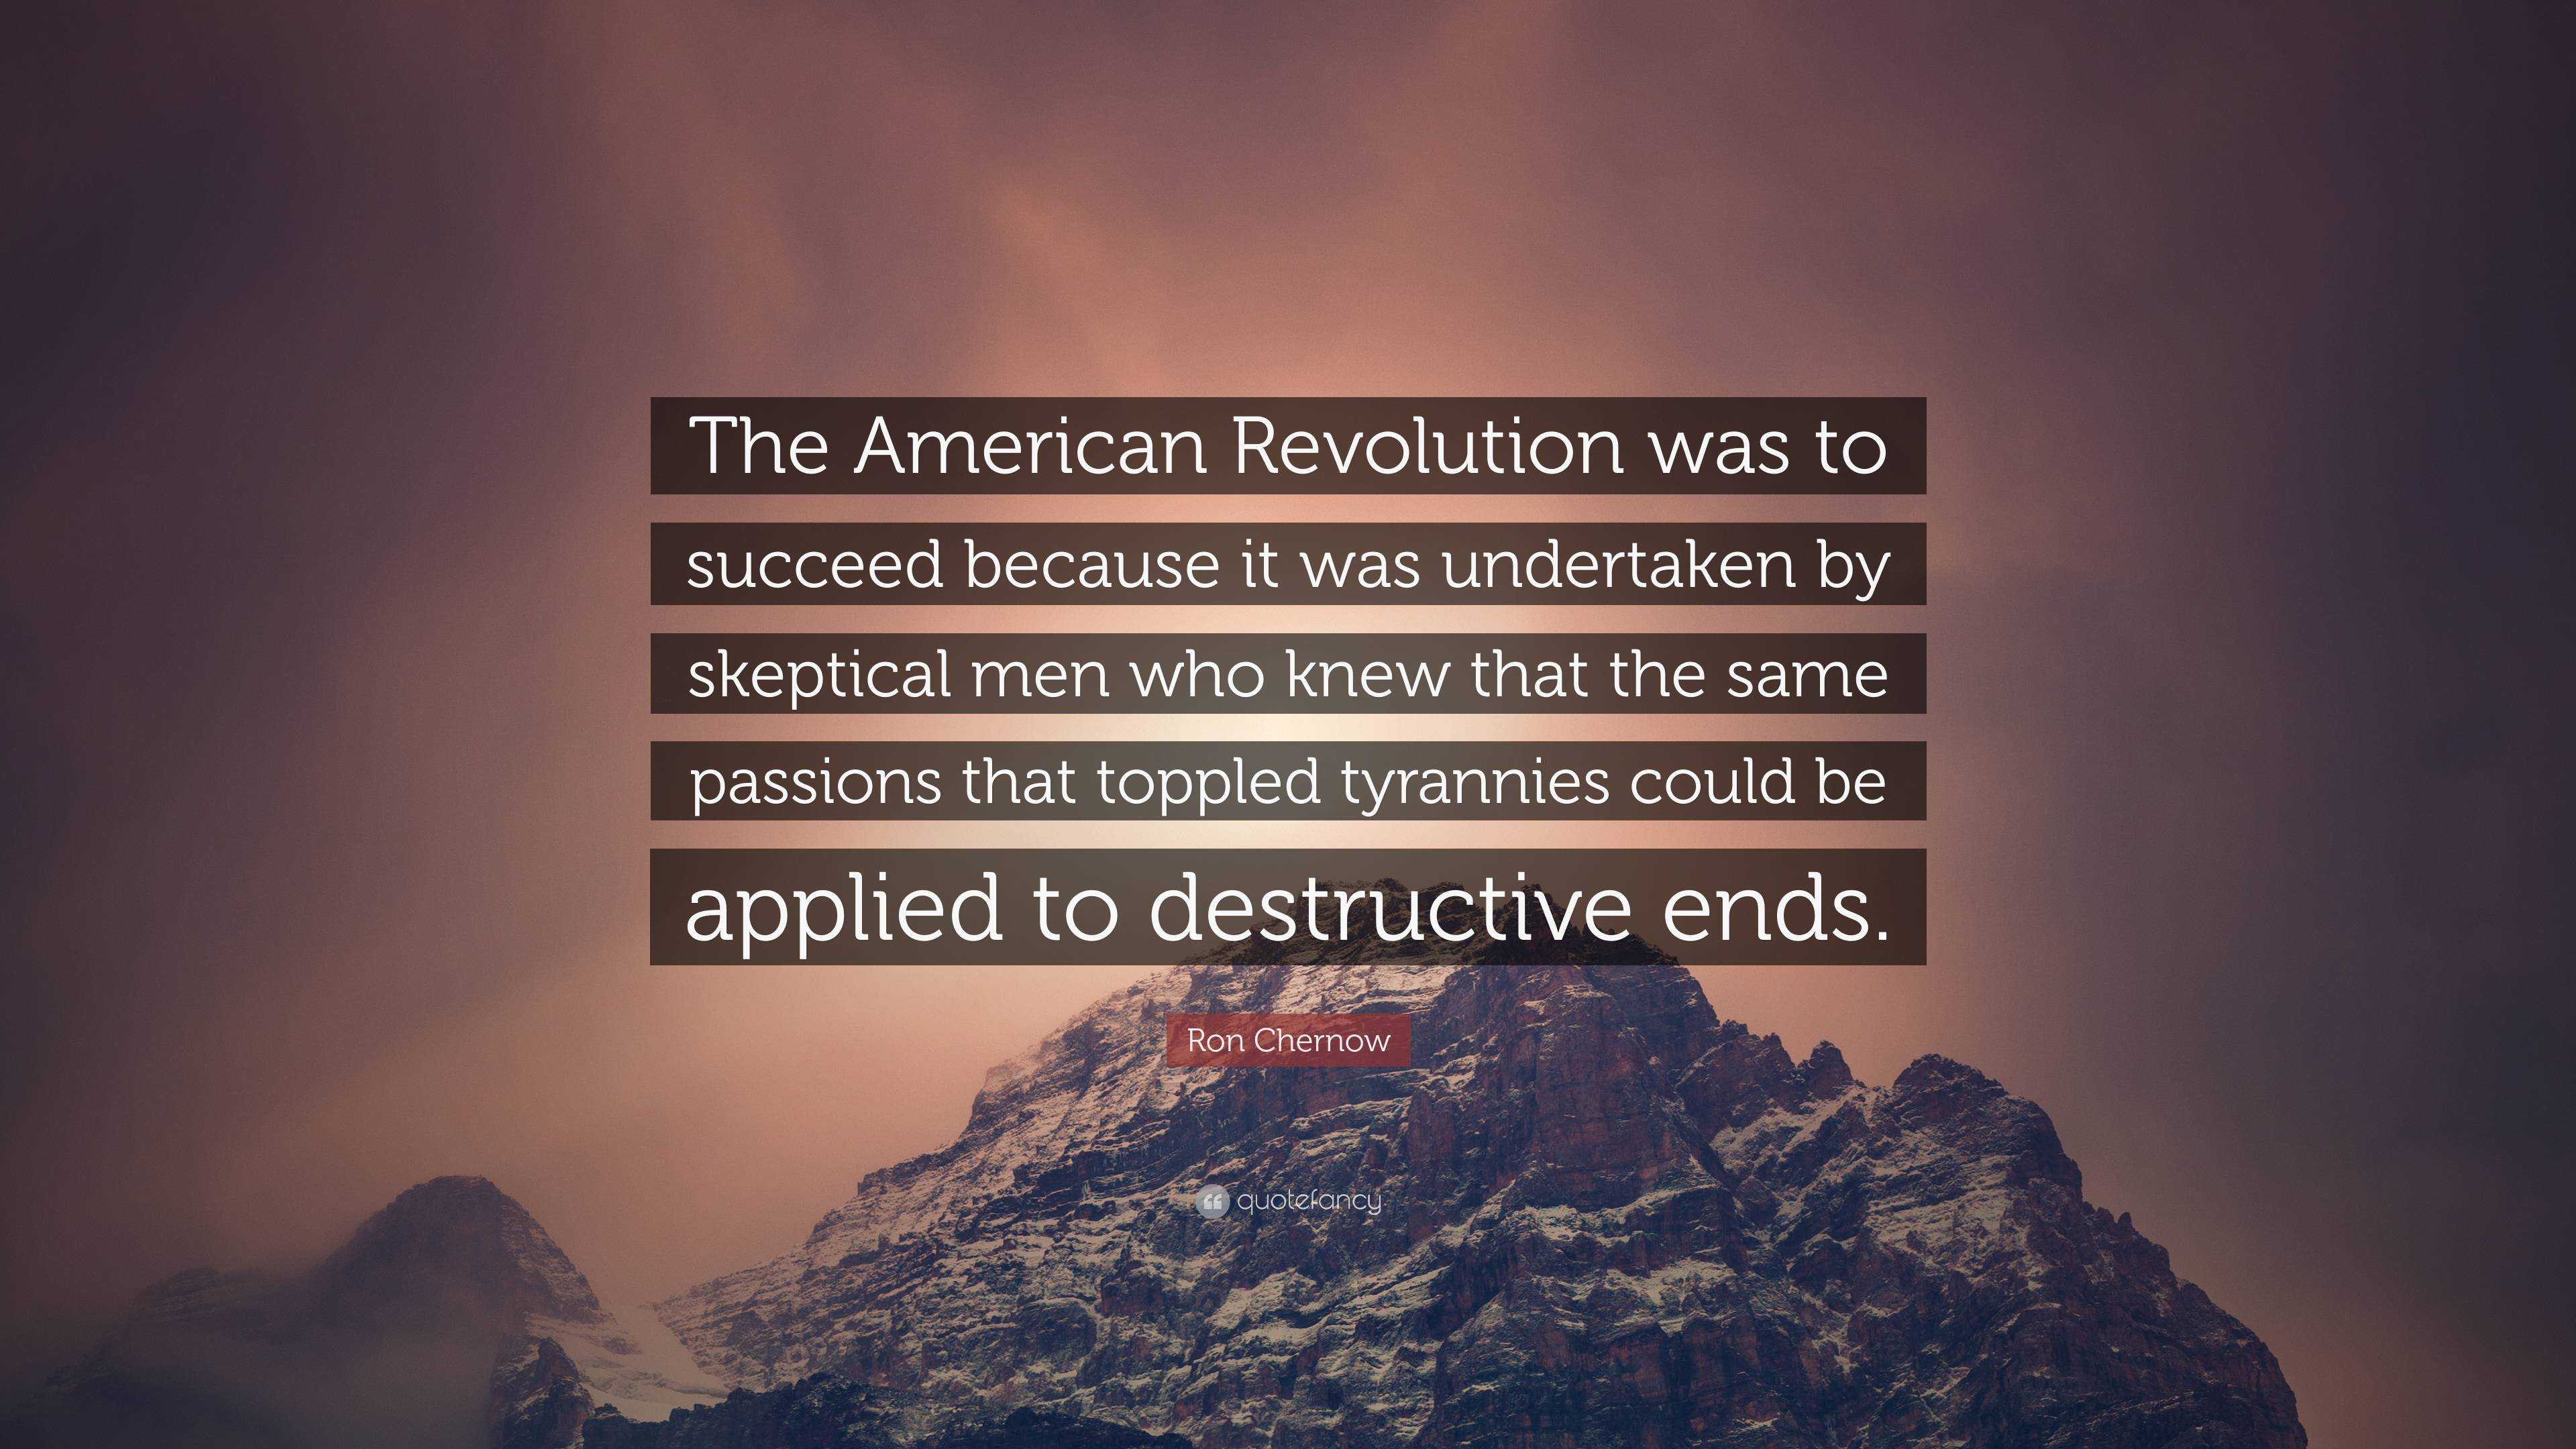 A Revolução Americana teve sucesso Ron Chernow - Pensador